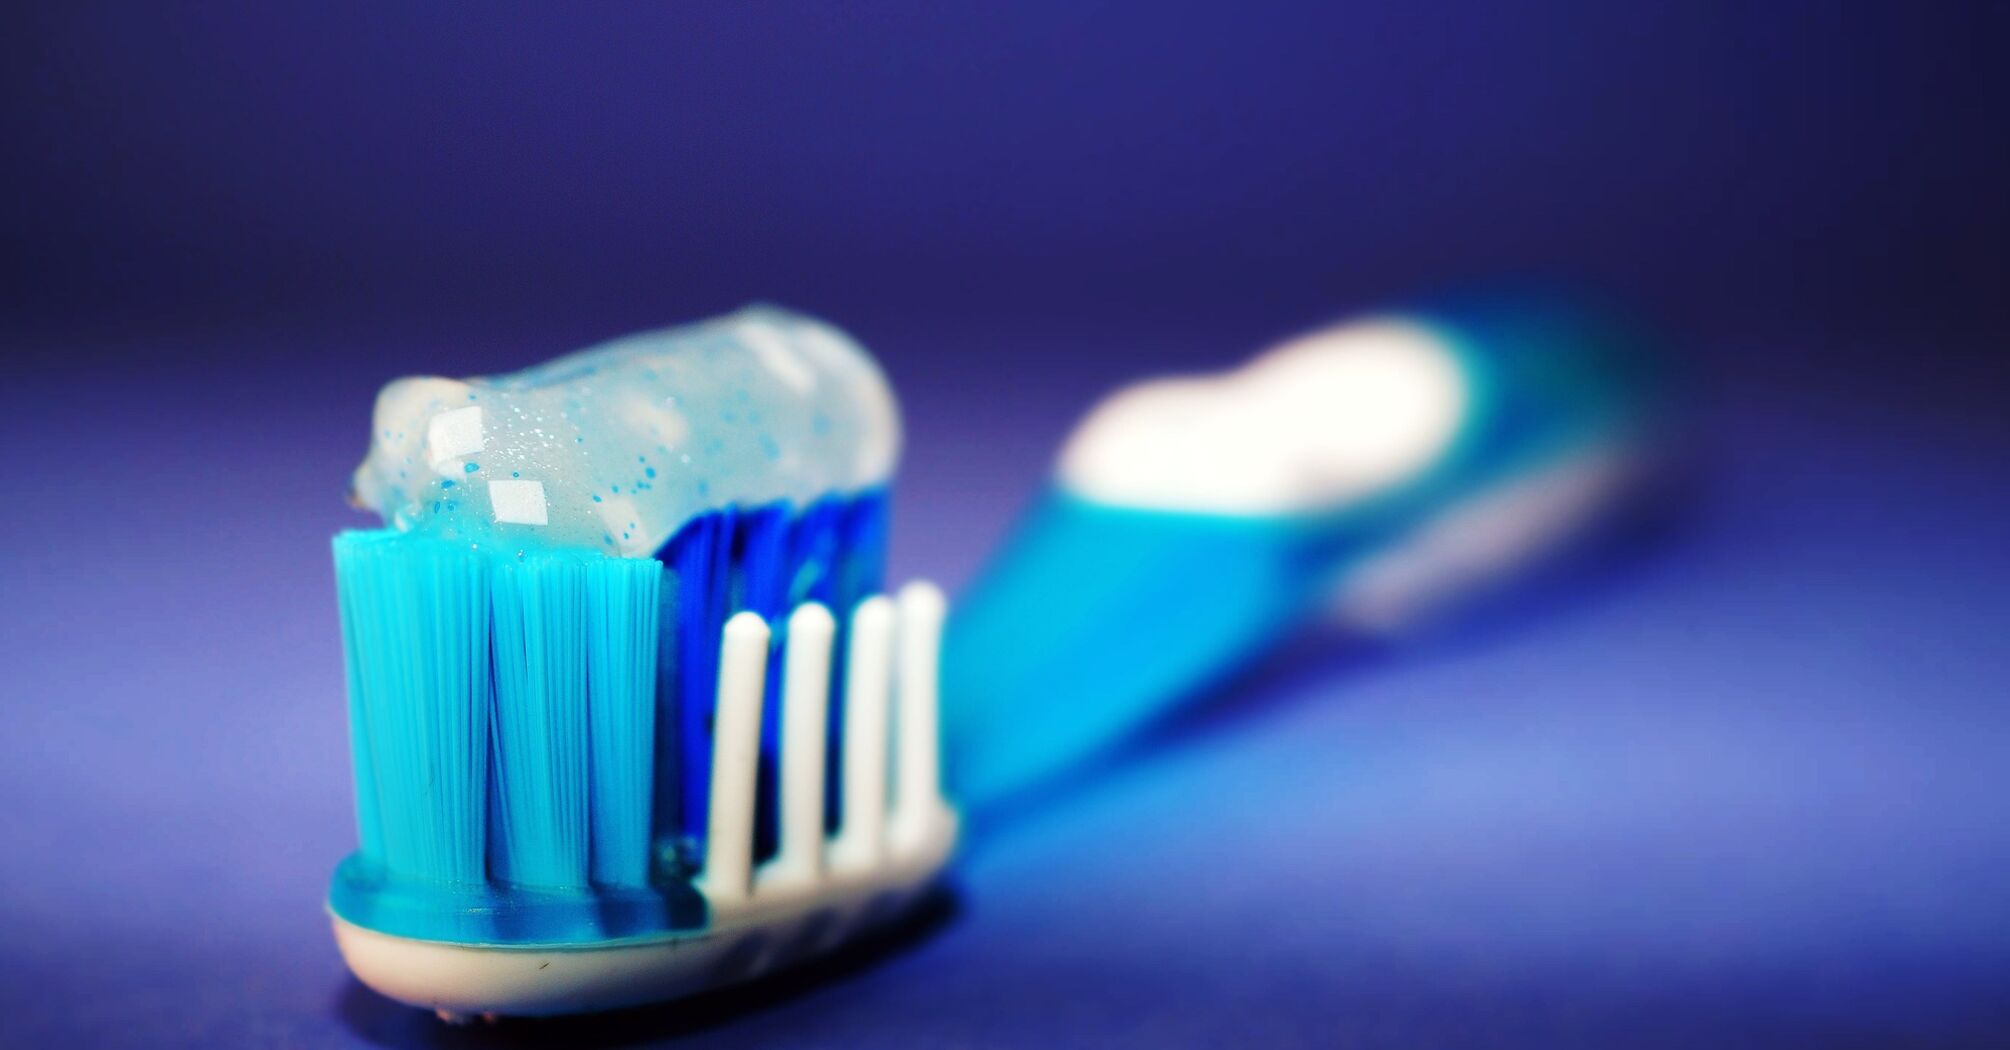 Стоит ли переплачивать: Сравнение обычной и электронной зубной щетки